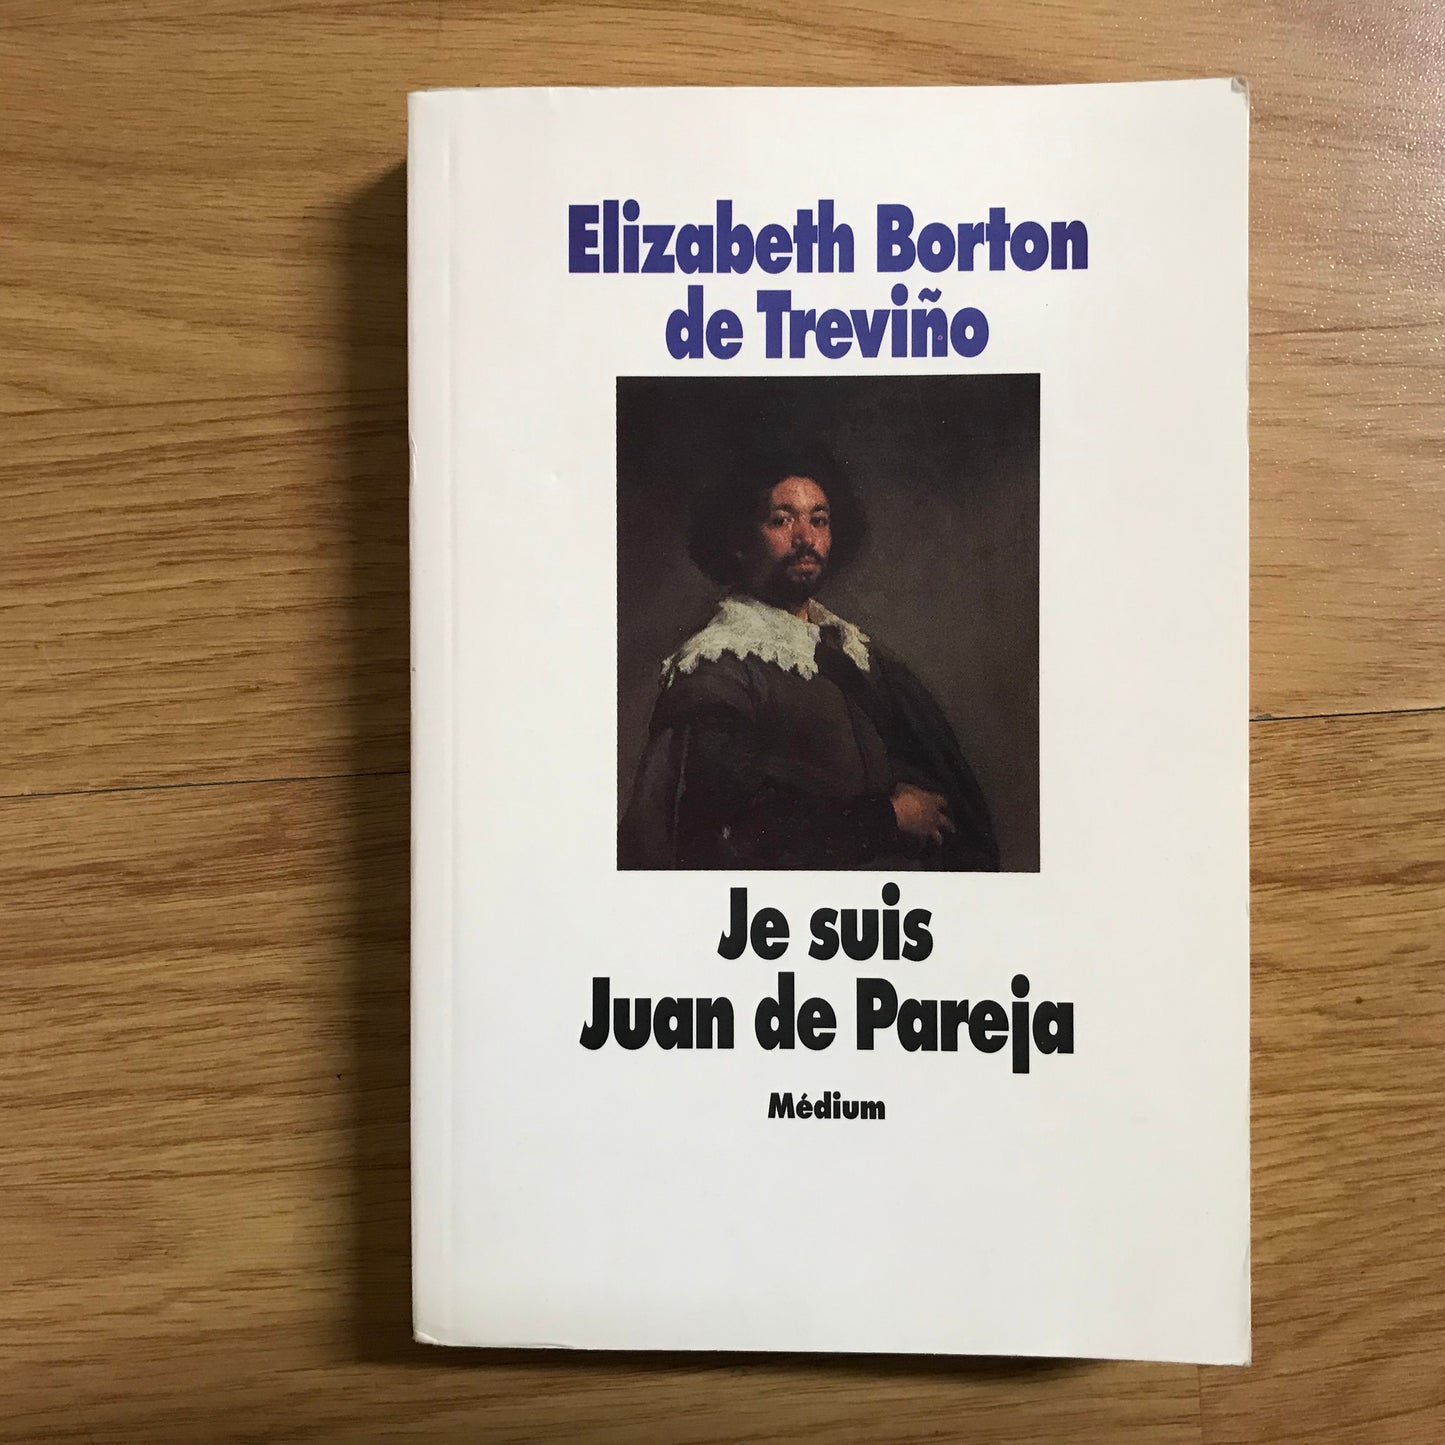 Borton de Trevino, Elizabeth - Je suis Juan de Pareja